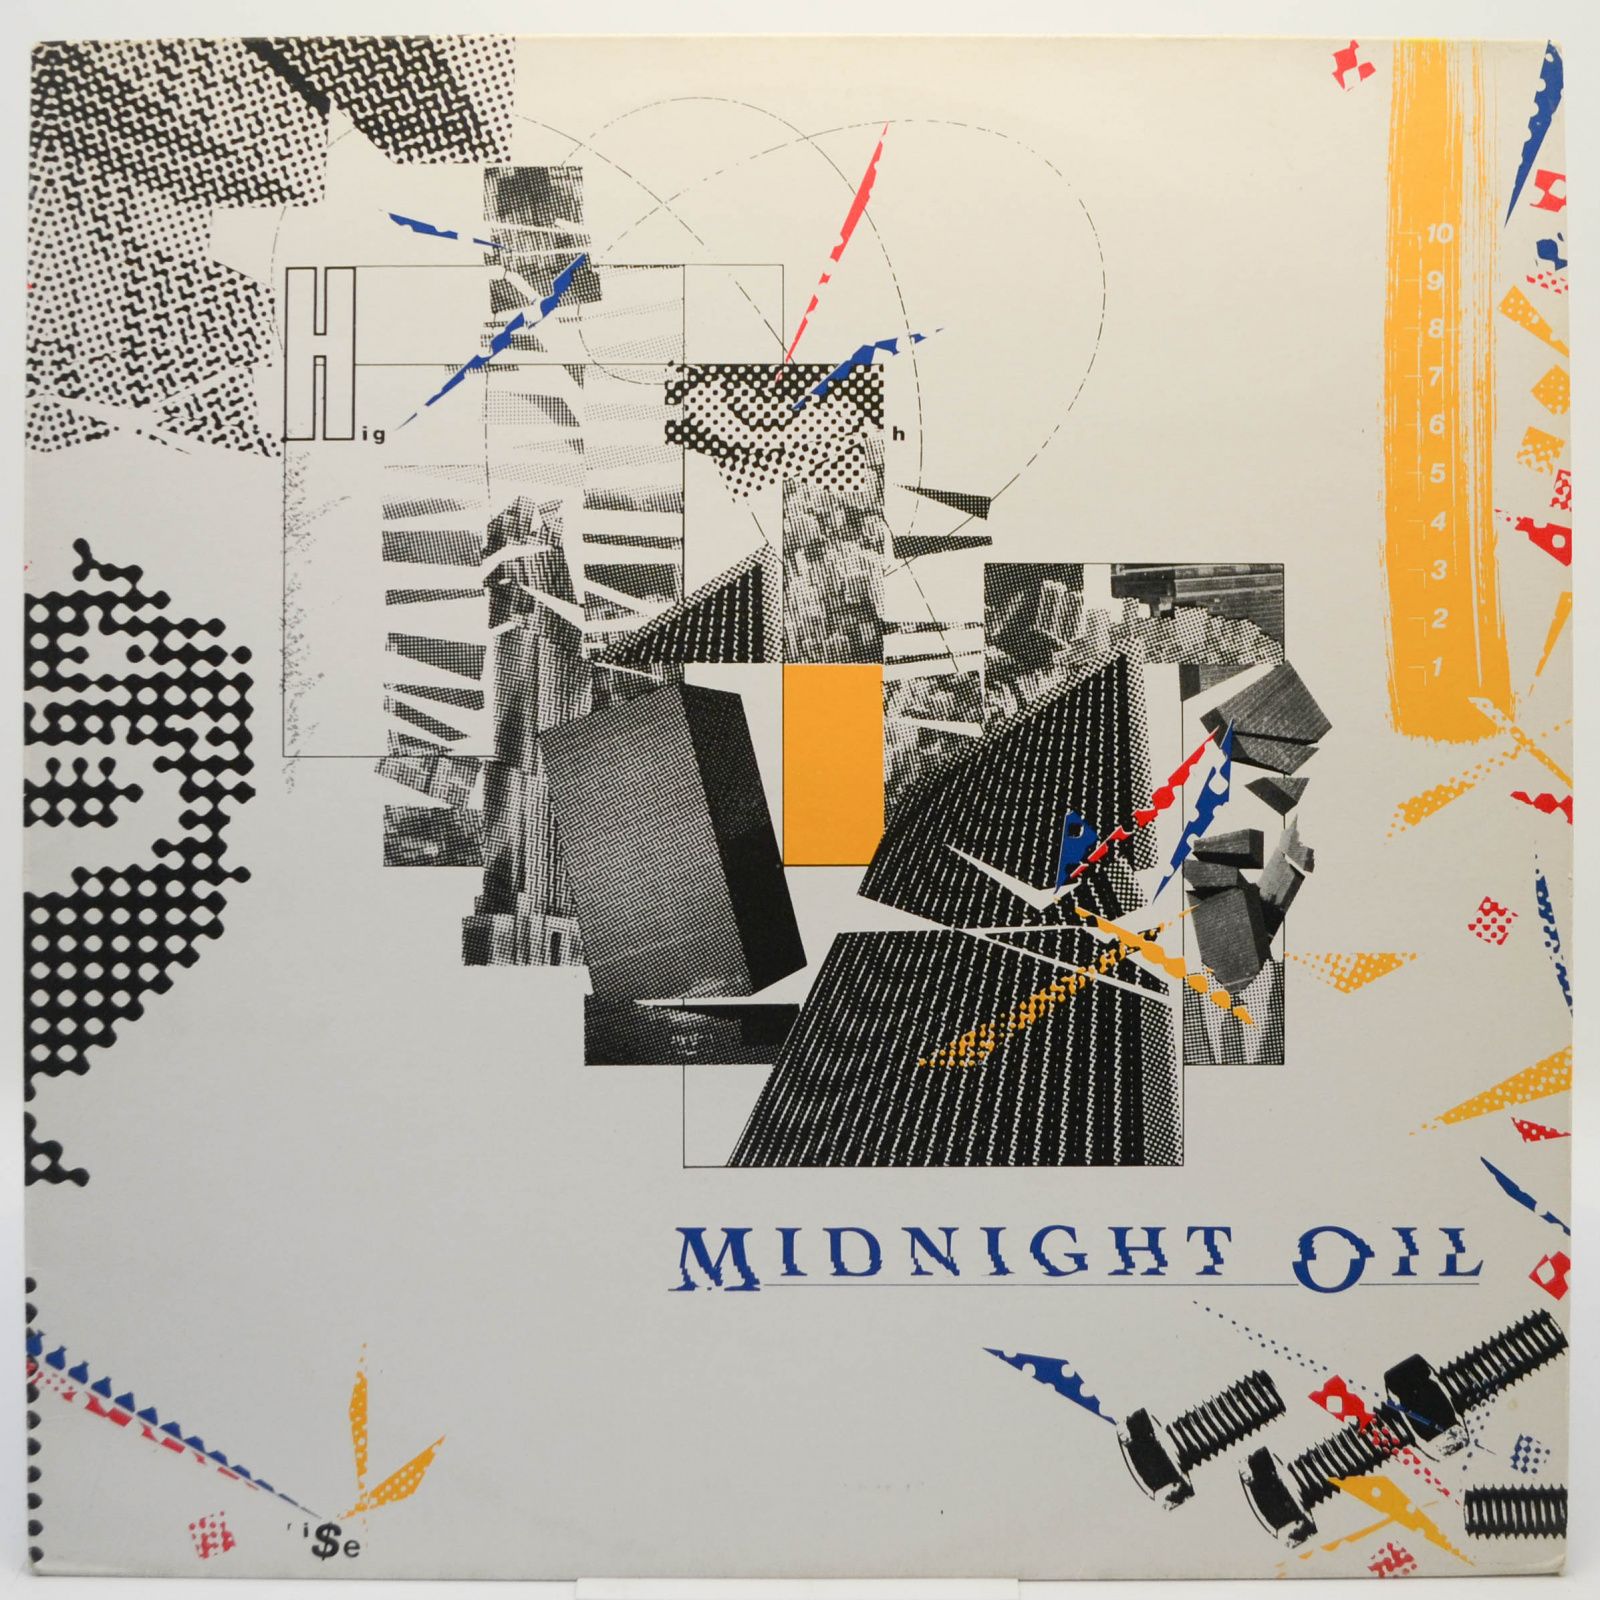 Midnight Oil — 10, 9, 8, 7, 6, 5, 4, 3, 2, 1, 1988